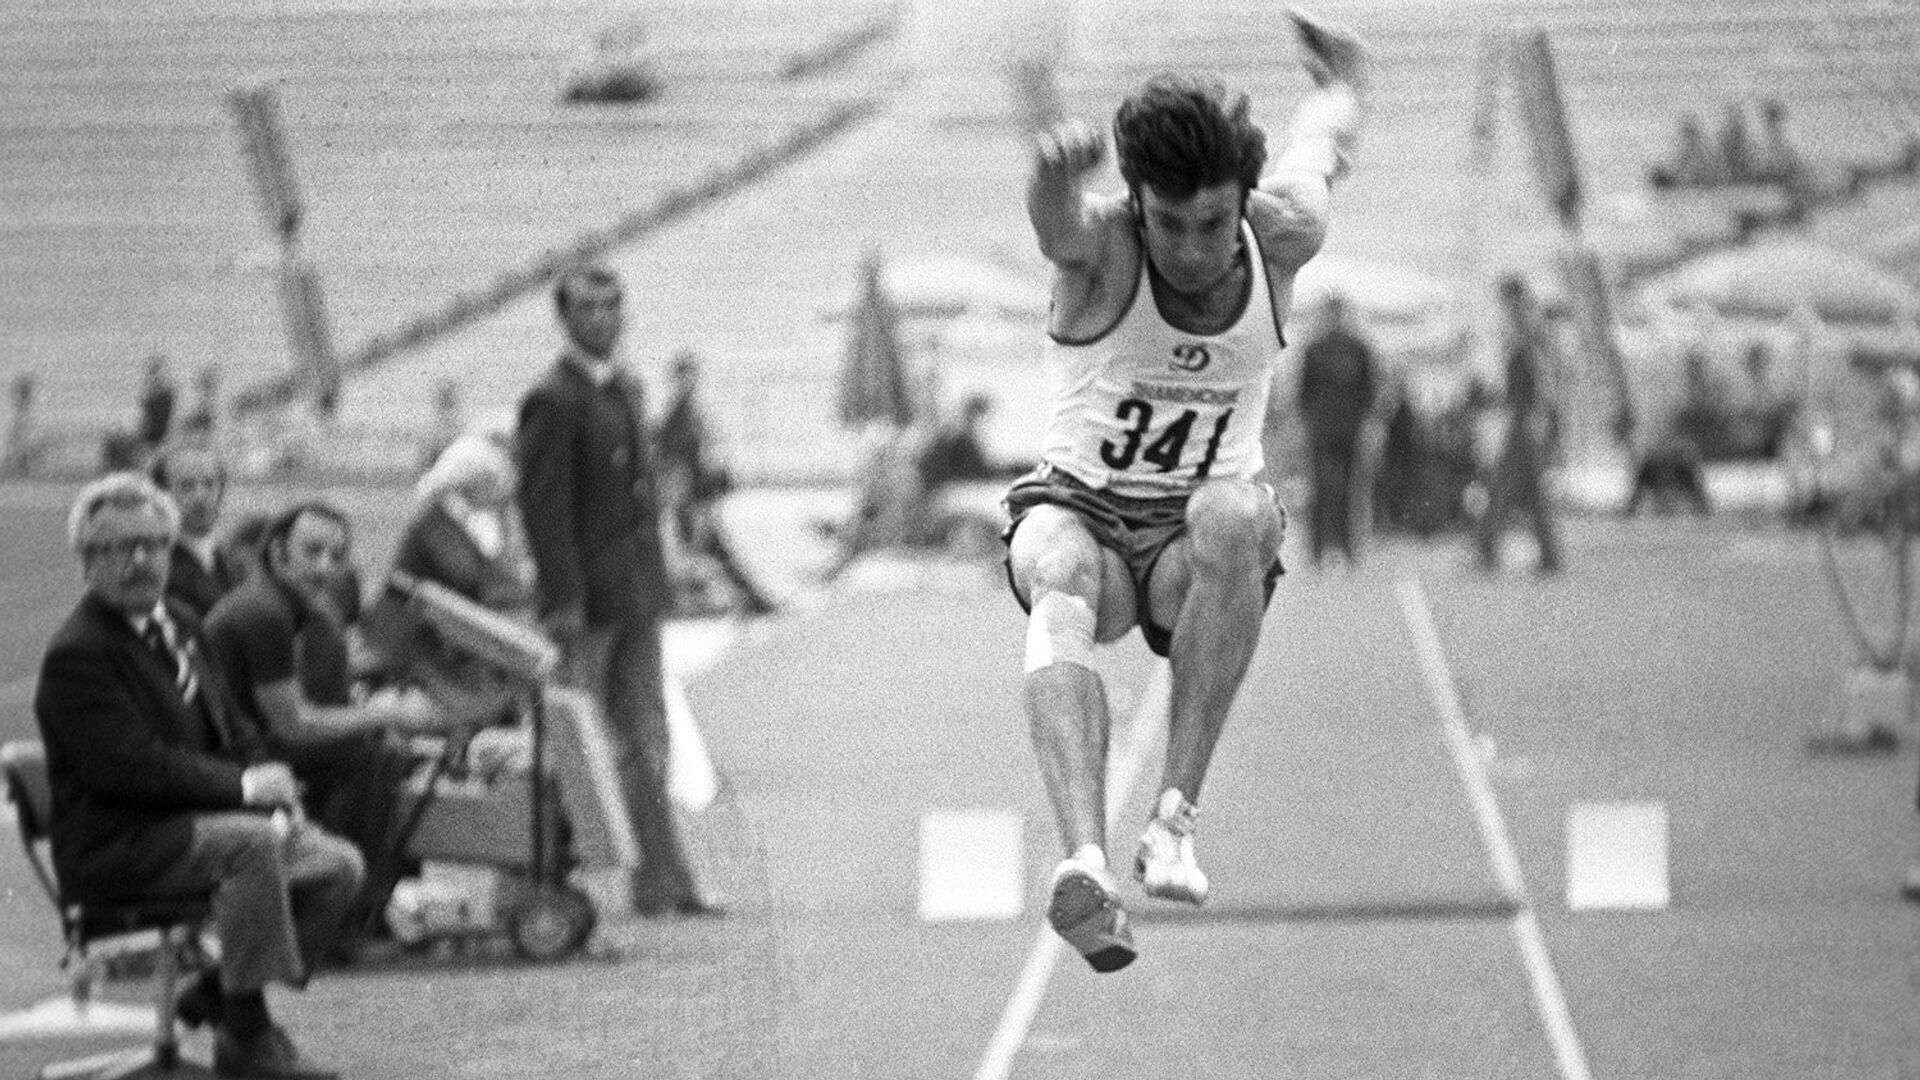 Трехкратный олимпийский чемпион в тройном прыжке, заслуженный мастер спорта СССР Виктор Санеев выполняет прыжок на турнире в Москве в 1980 году  - Sputnik Грузия, 1920, 03.01.2022